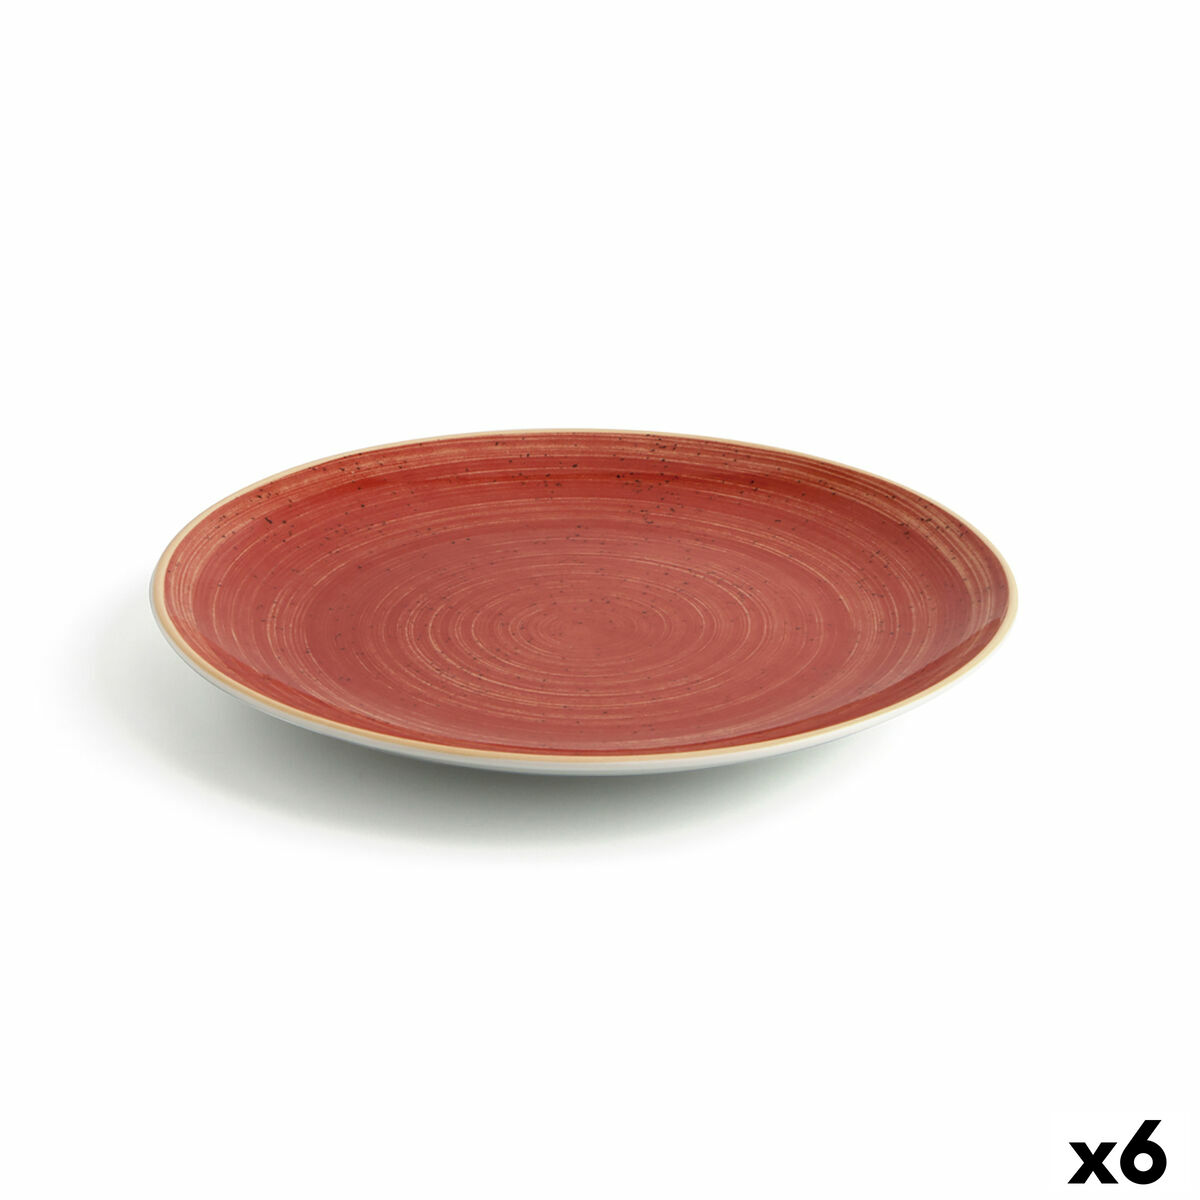 Piatto da pranzo Ariane Terra Rosso Ceramica Ø 27 cm (6 Unità)